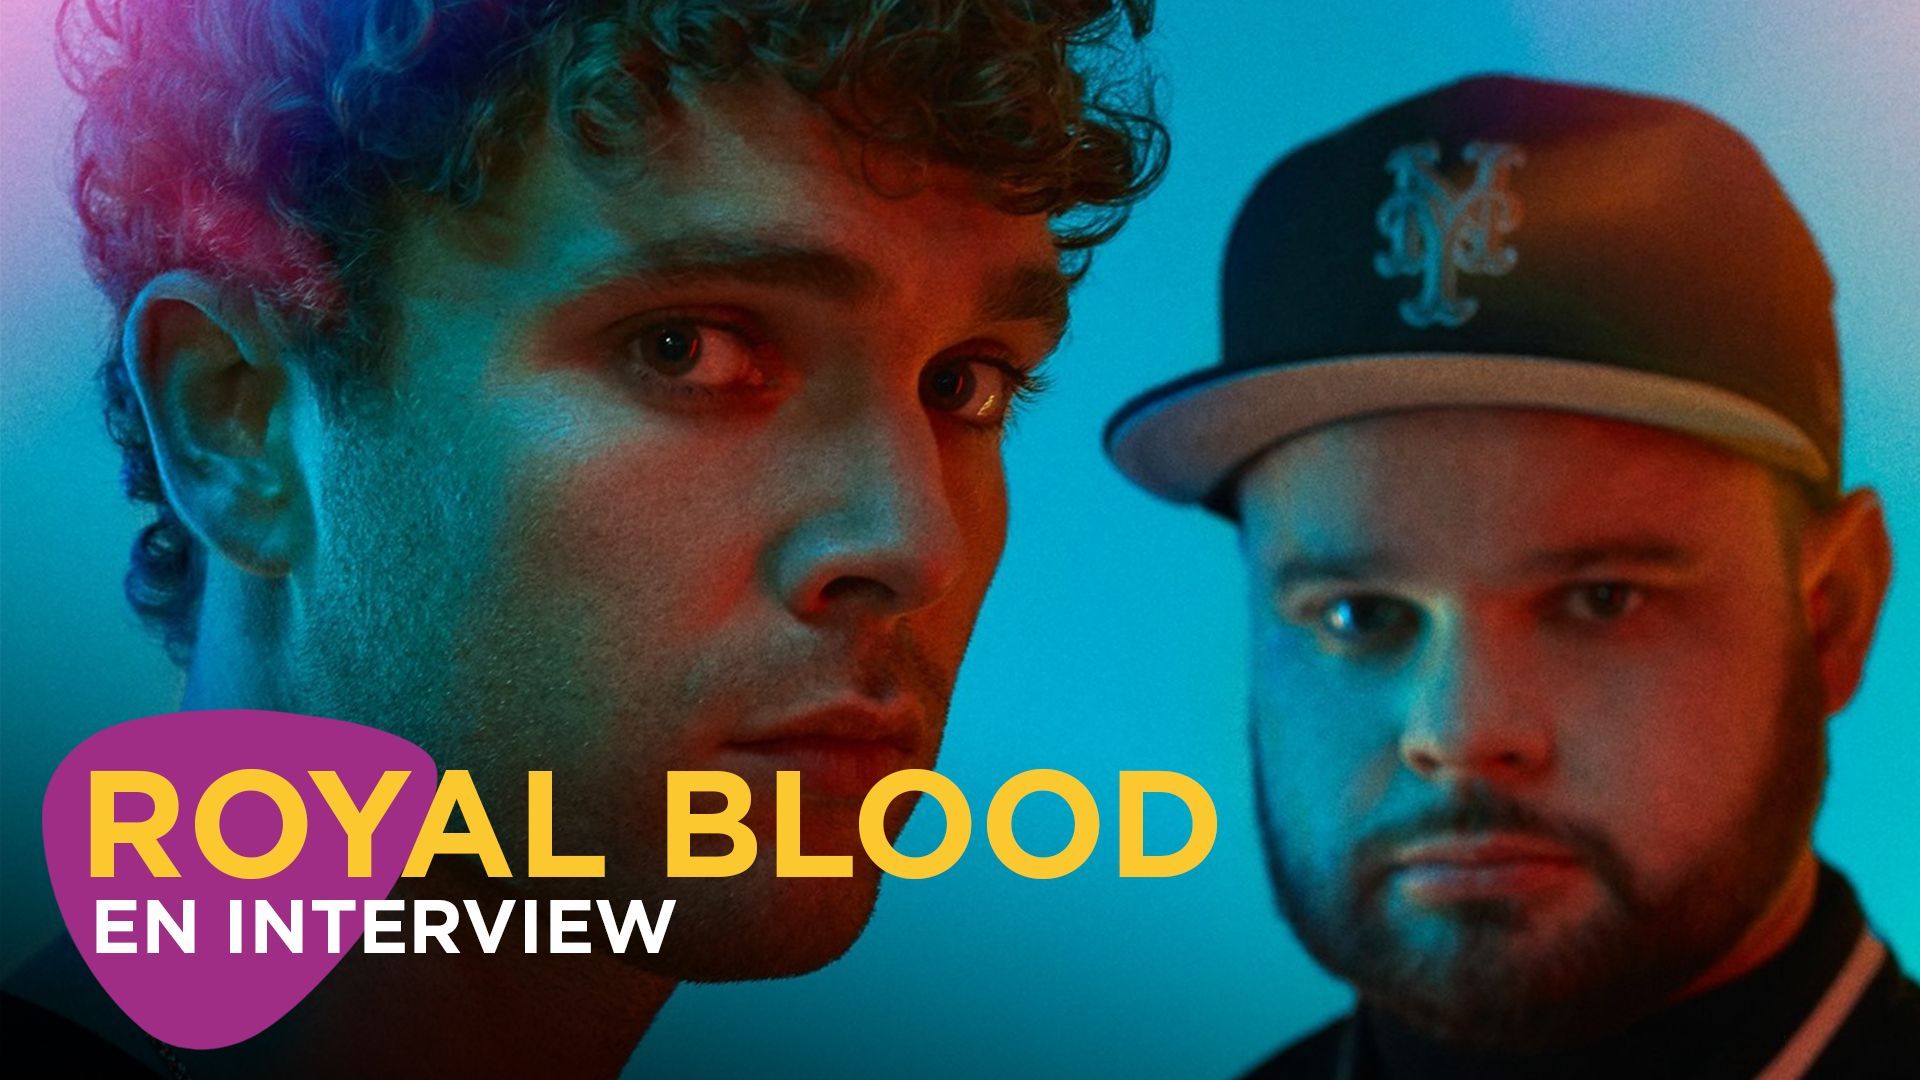 Royal Blood en interview